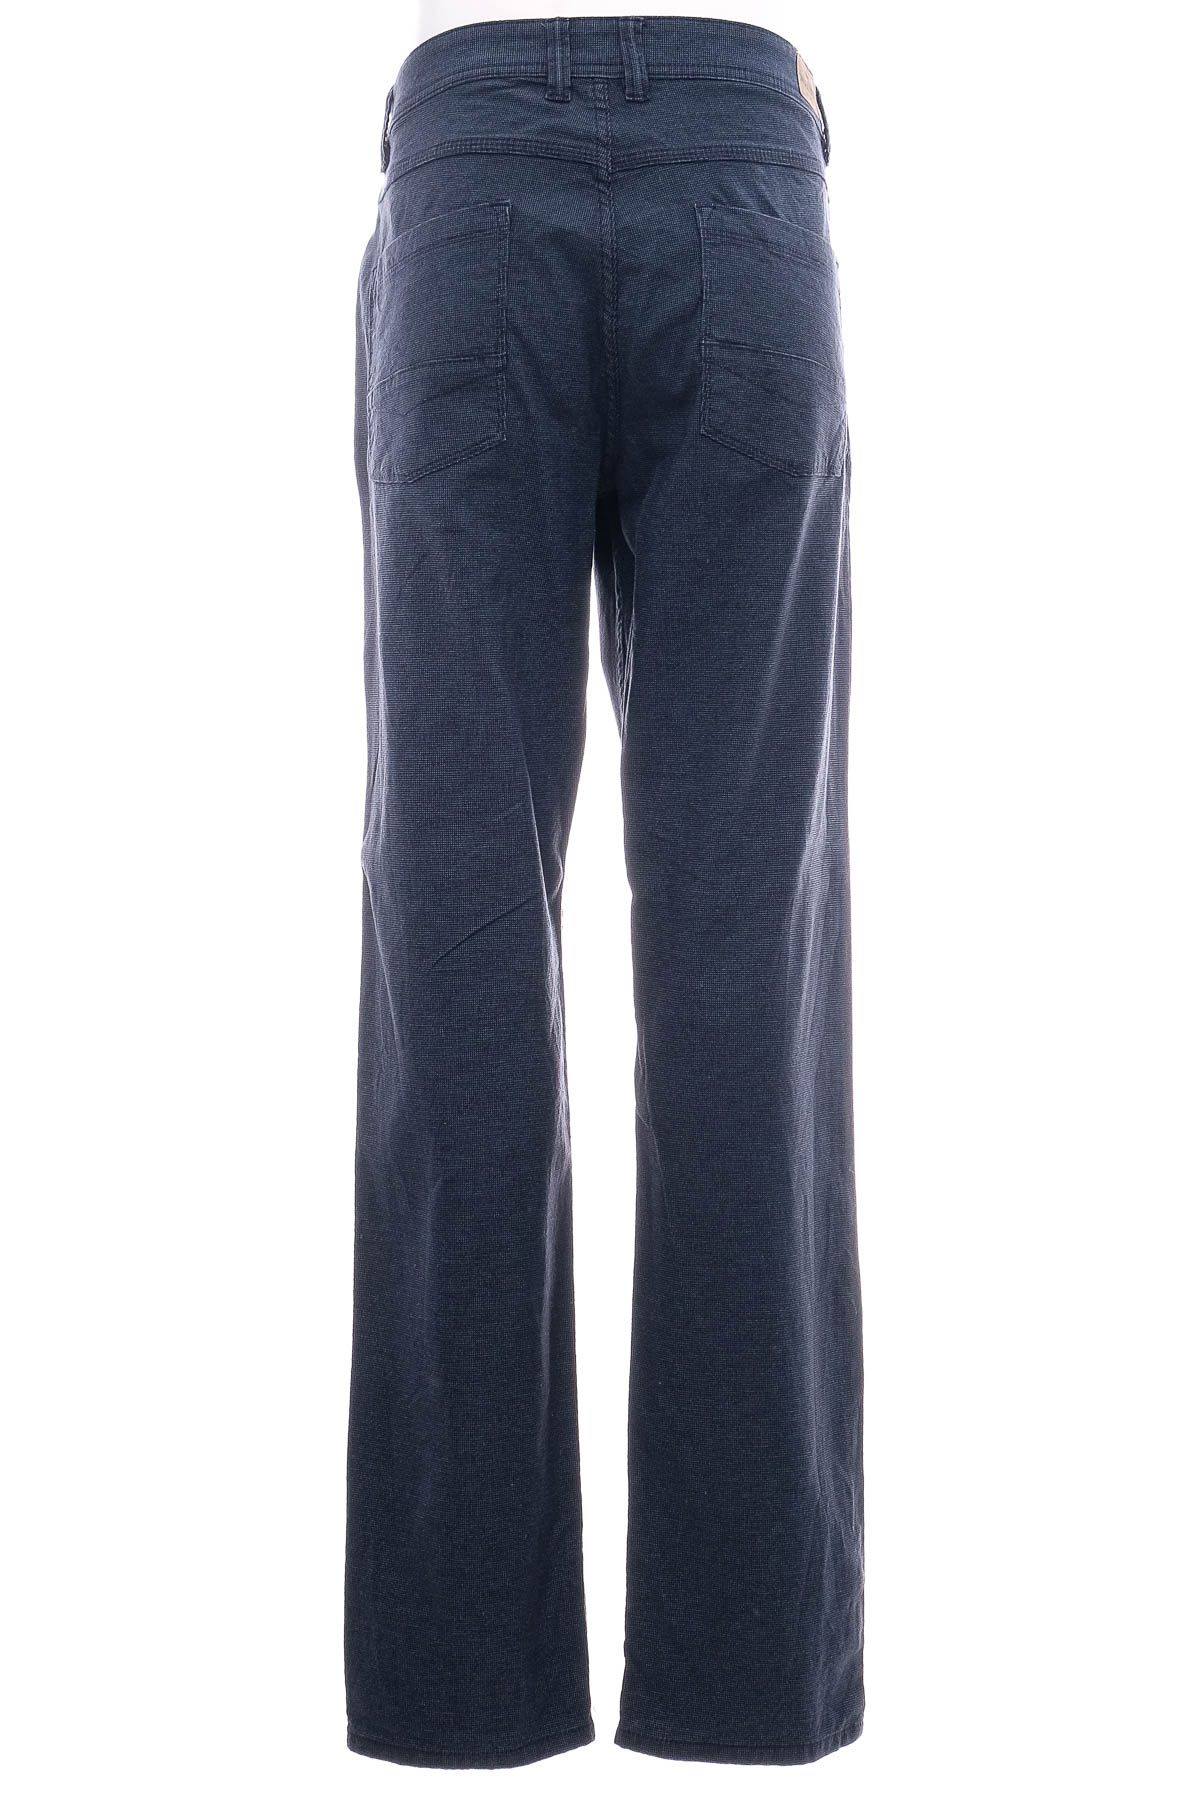 Jeans pentru bărbăți - MONTEGO - 1